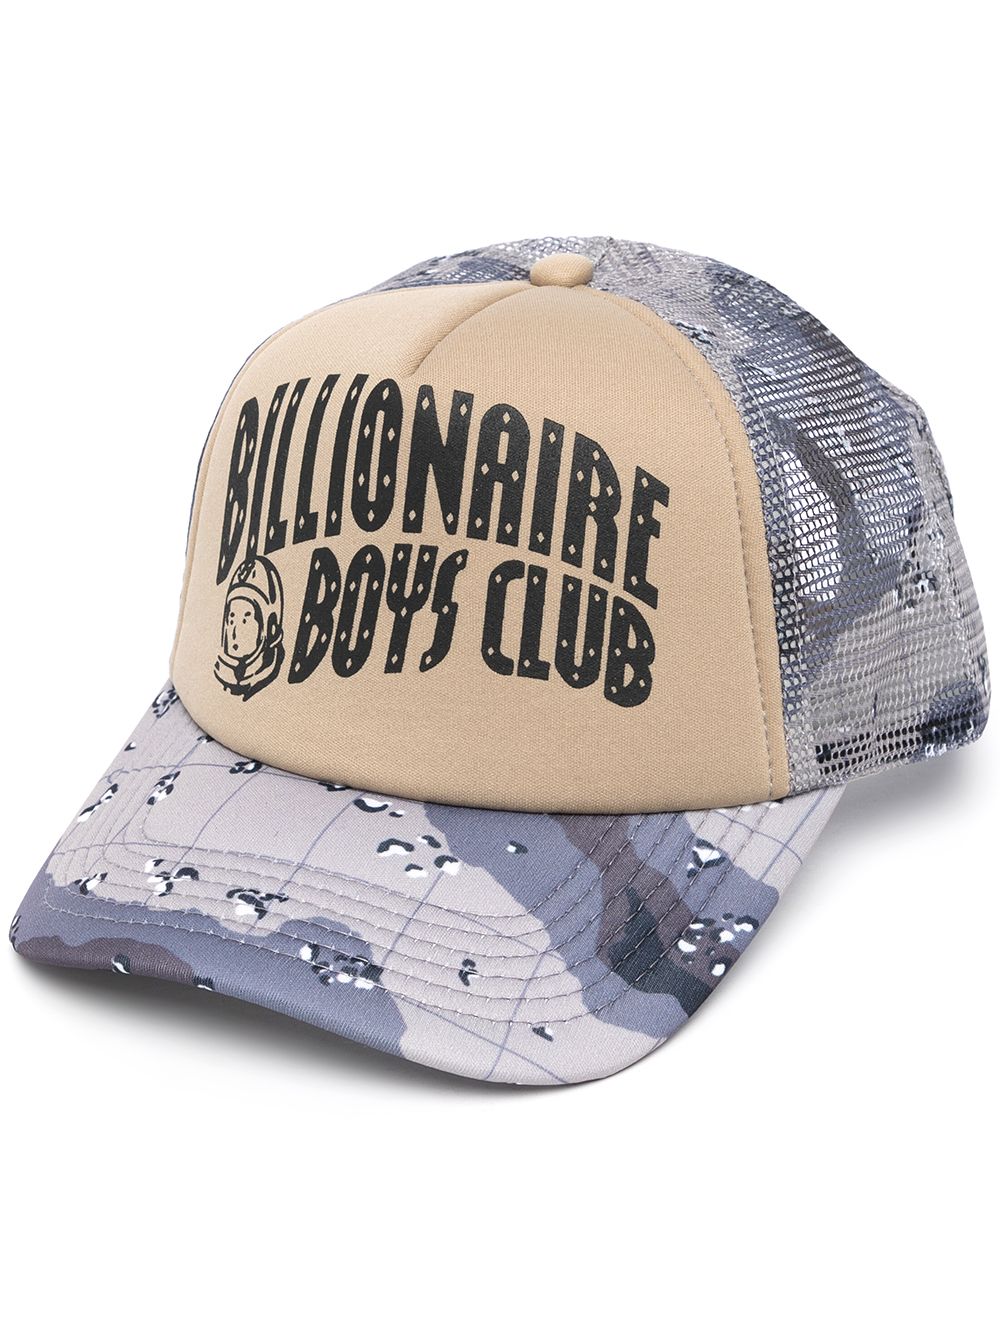 фото Billionaire boys club кепка с логотипом